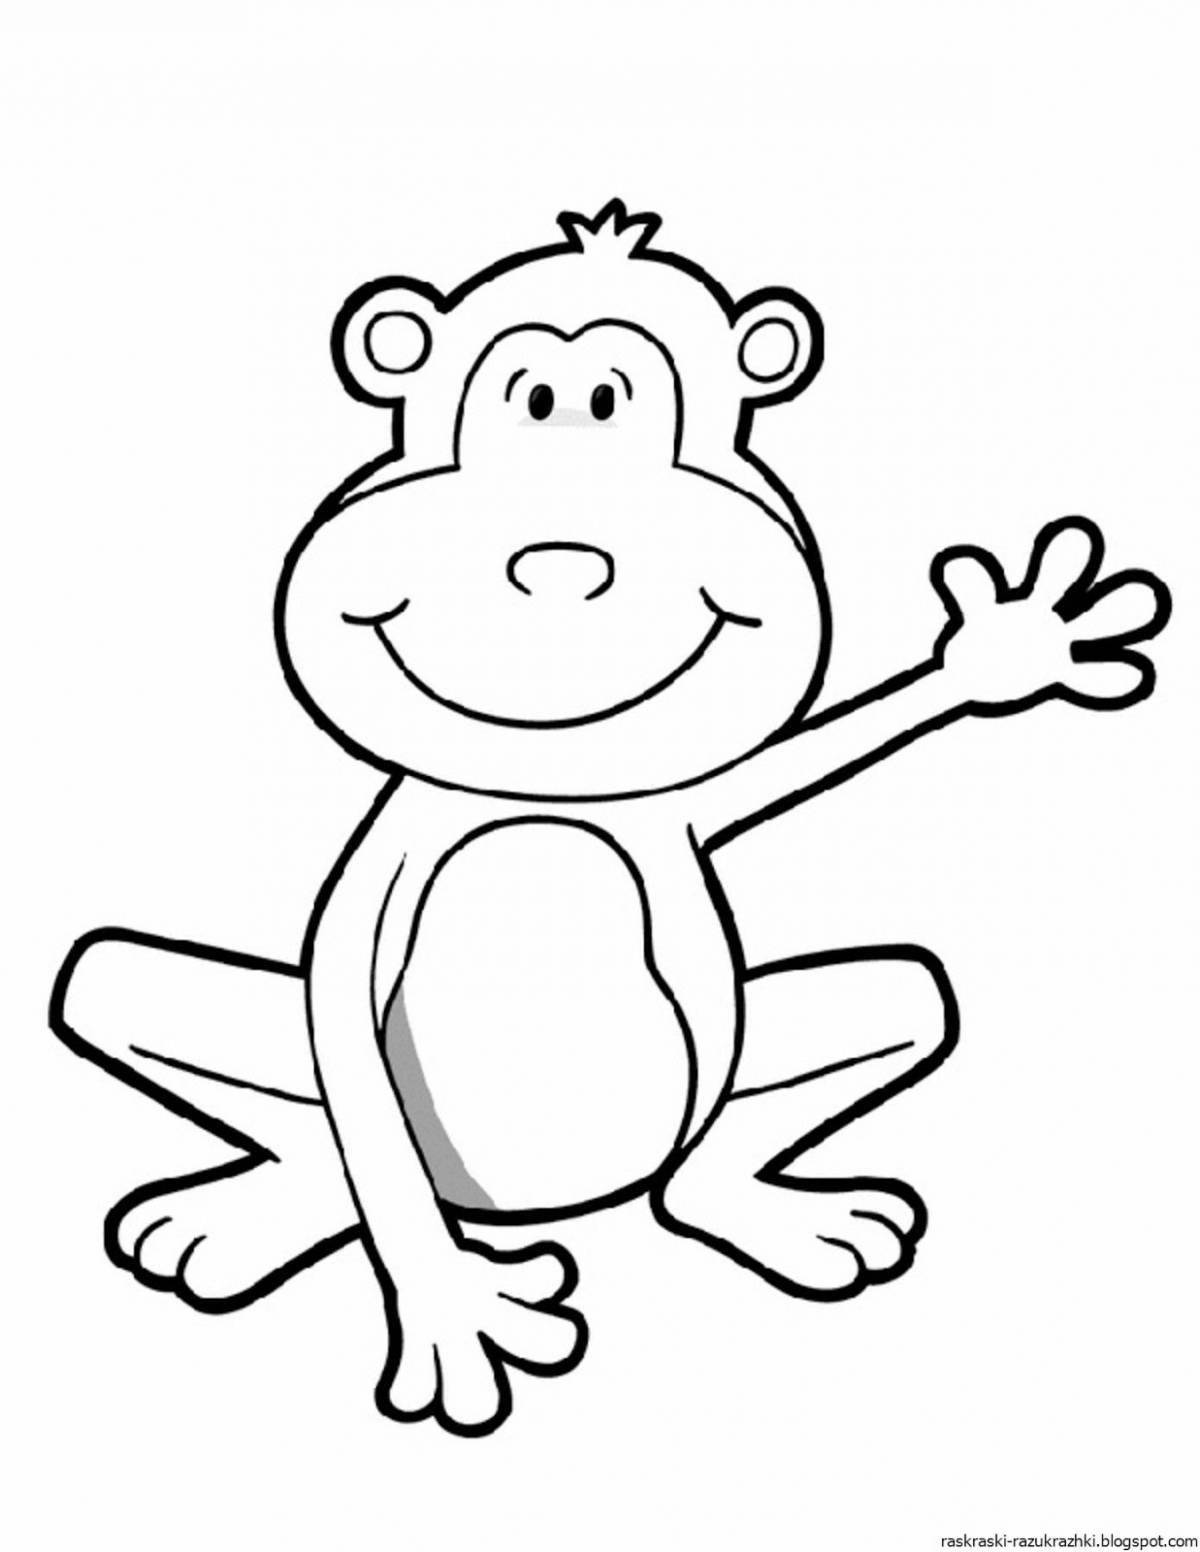 Забавная раскраска обезьяна для детей